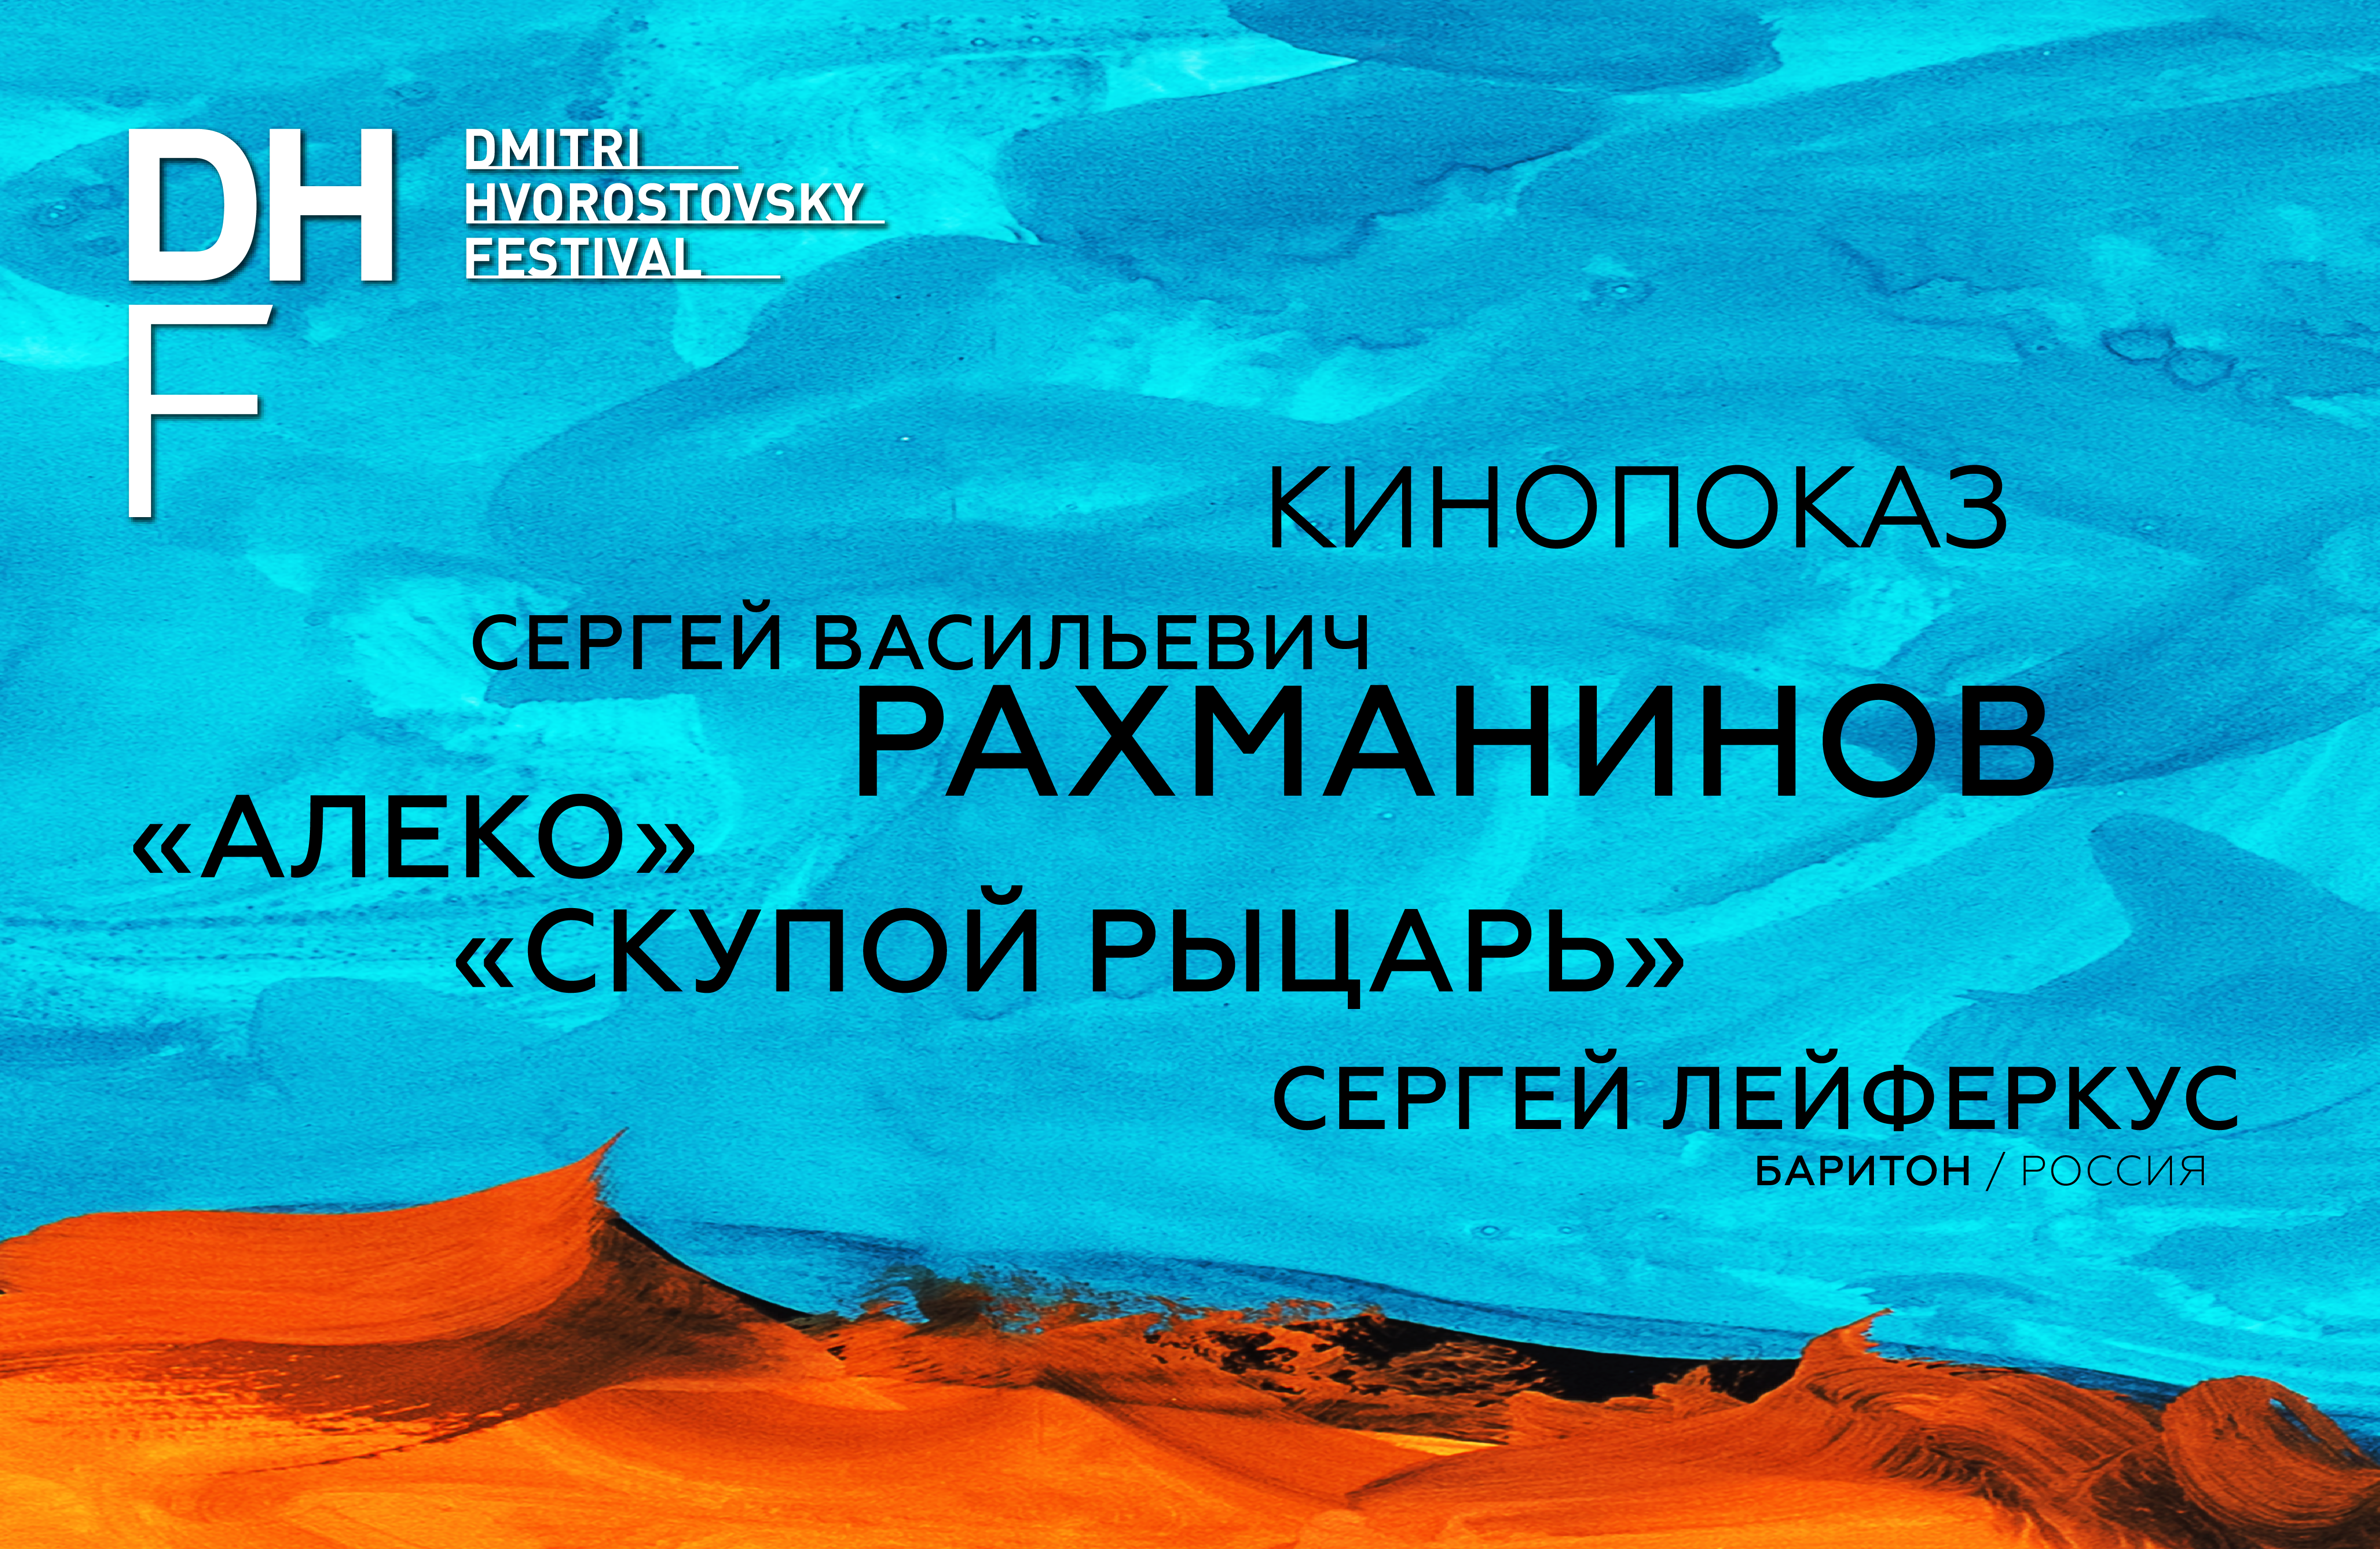 Специальный кинопоказ опер «Алеко» и «Скупой рыцарь» в рамках фестиваля Дмитрия Хворостовского